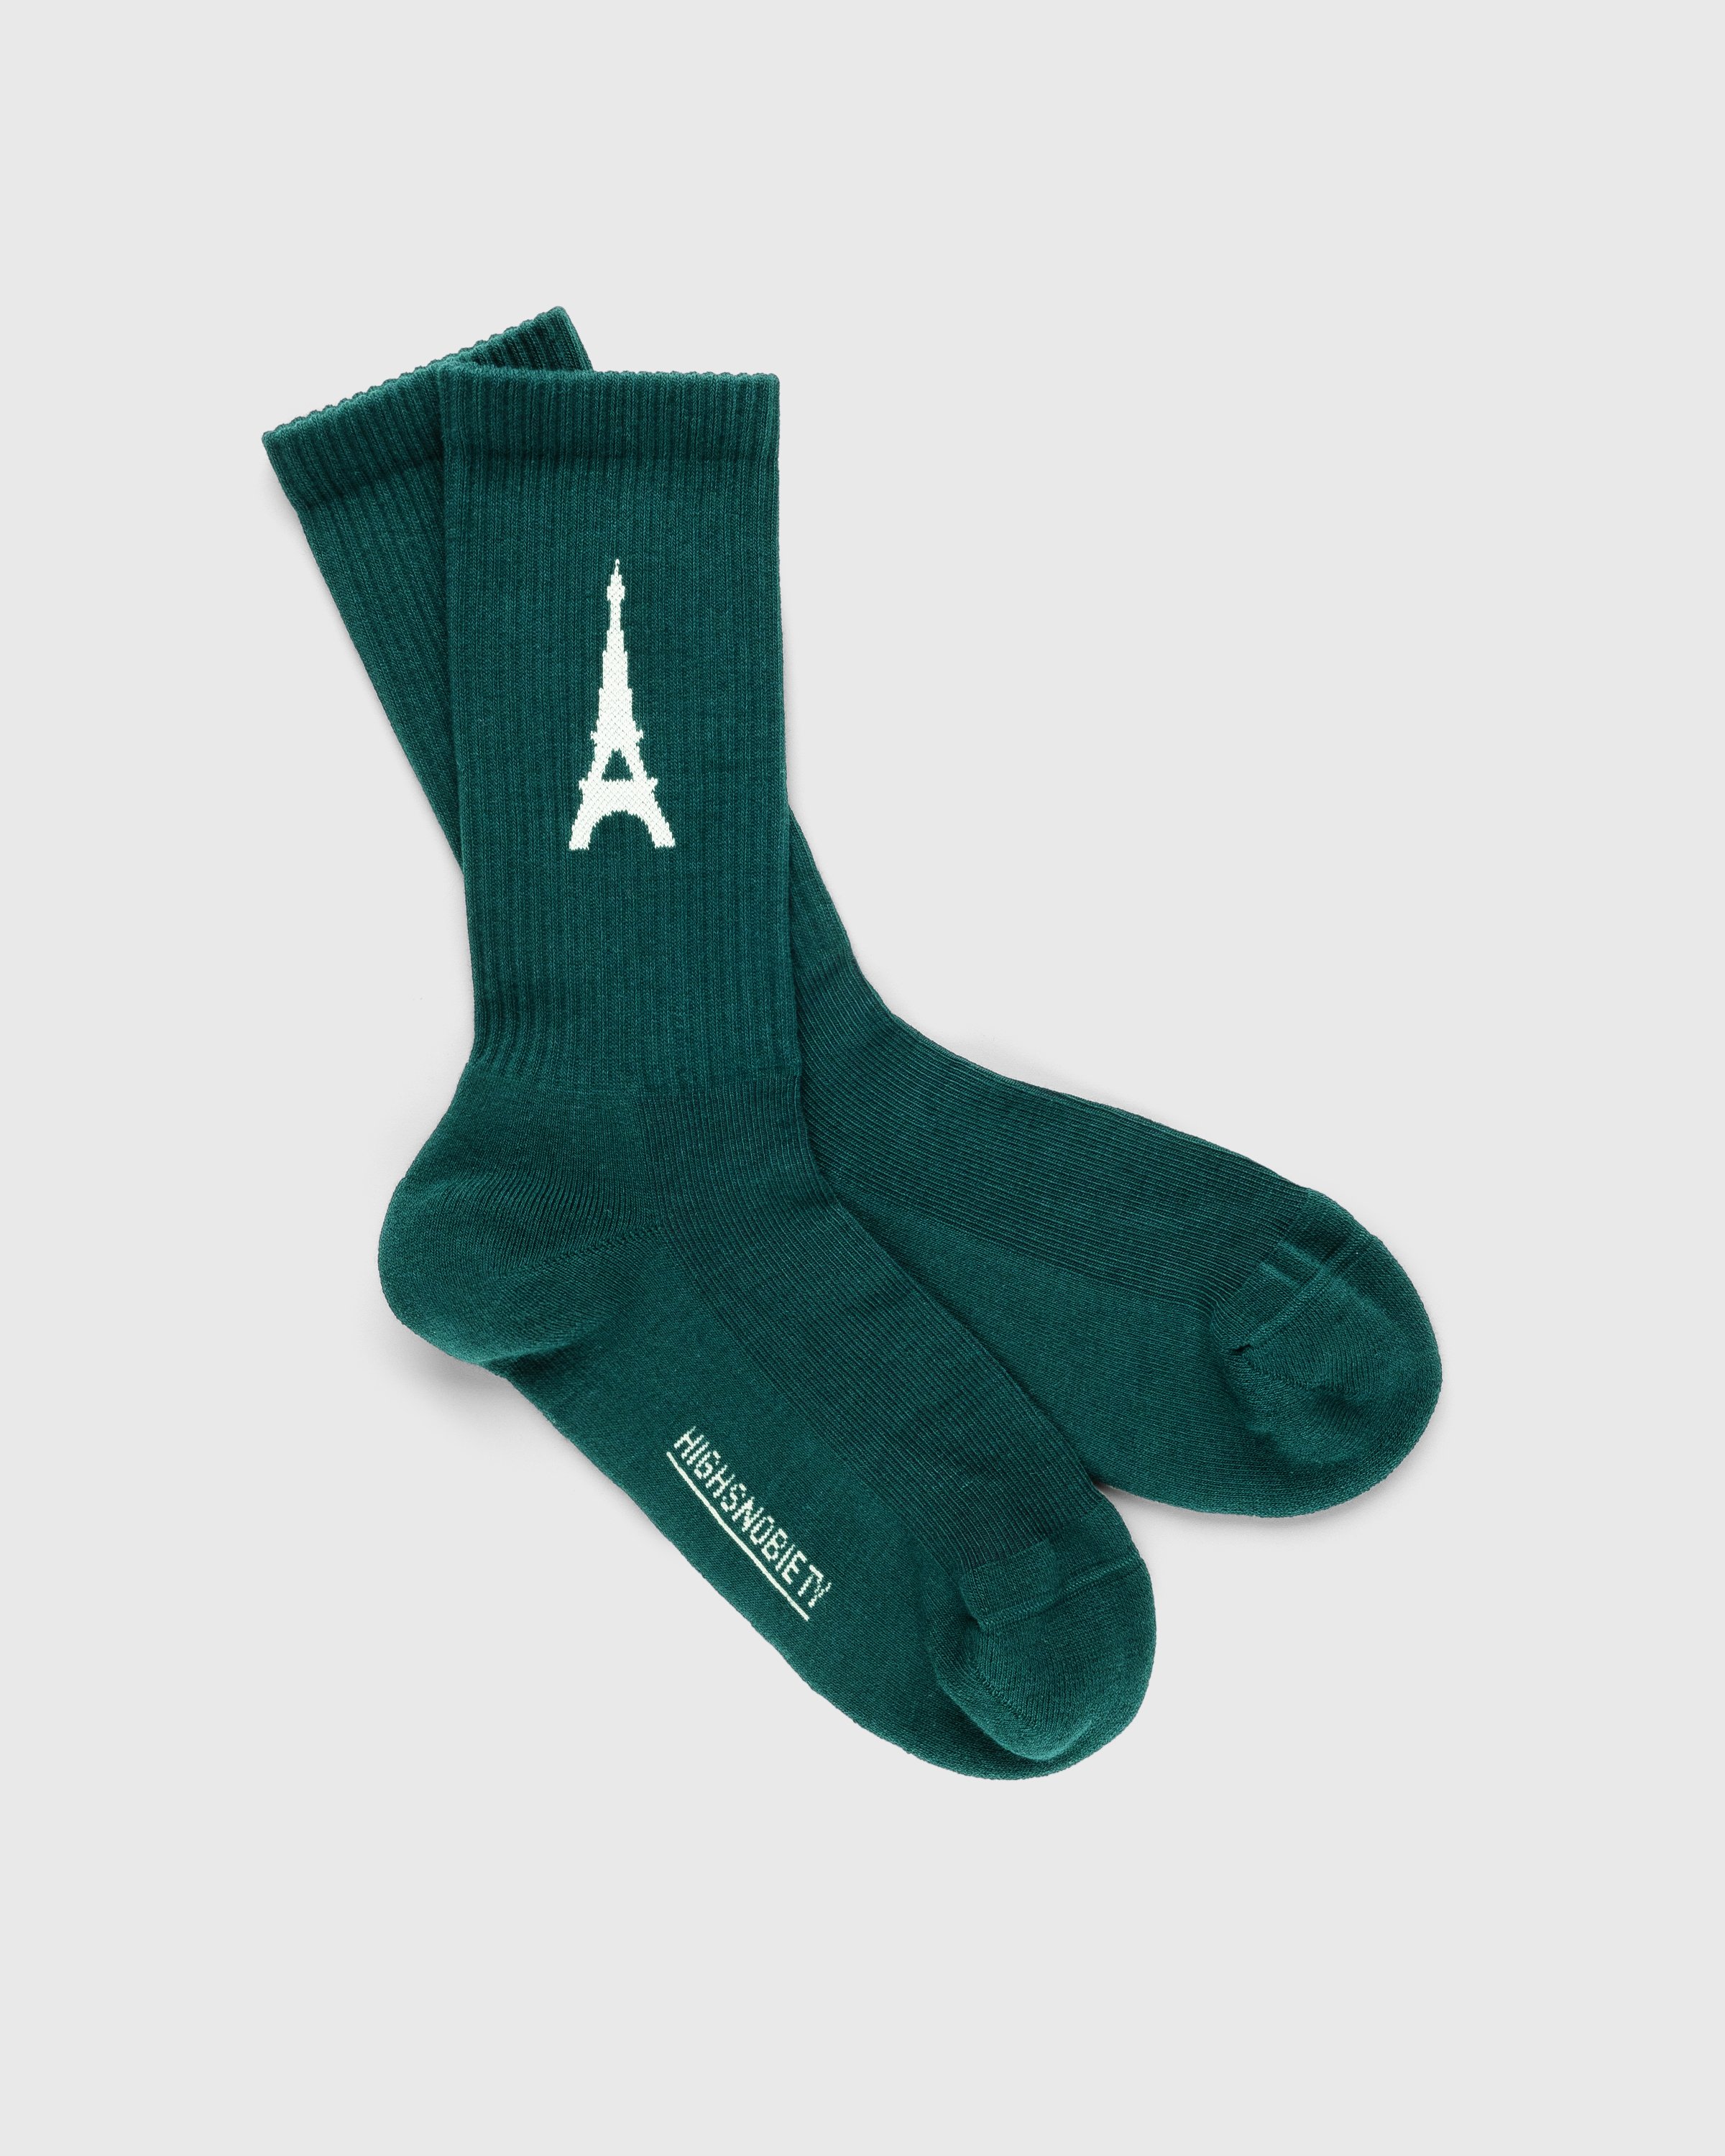 Highsnobiety - Not In Paris 4 Eiffel Tower Socks Dark Green - Accessories - Green - Image 1